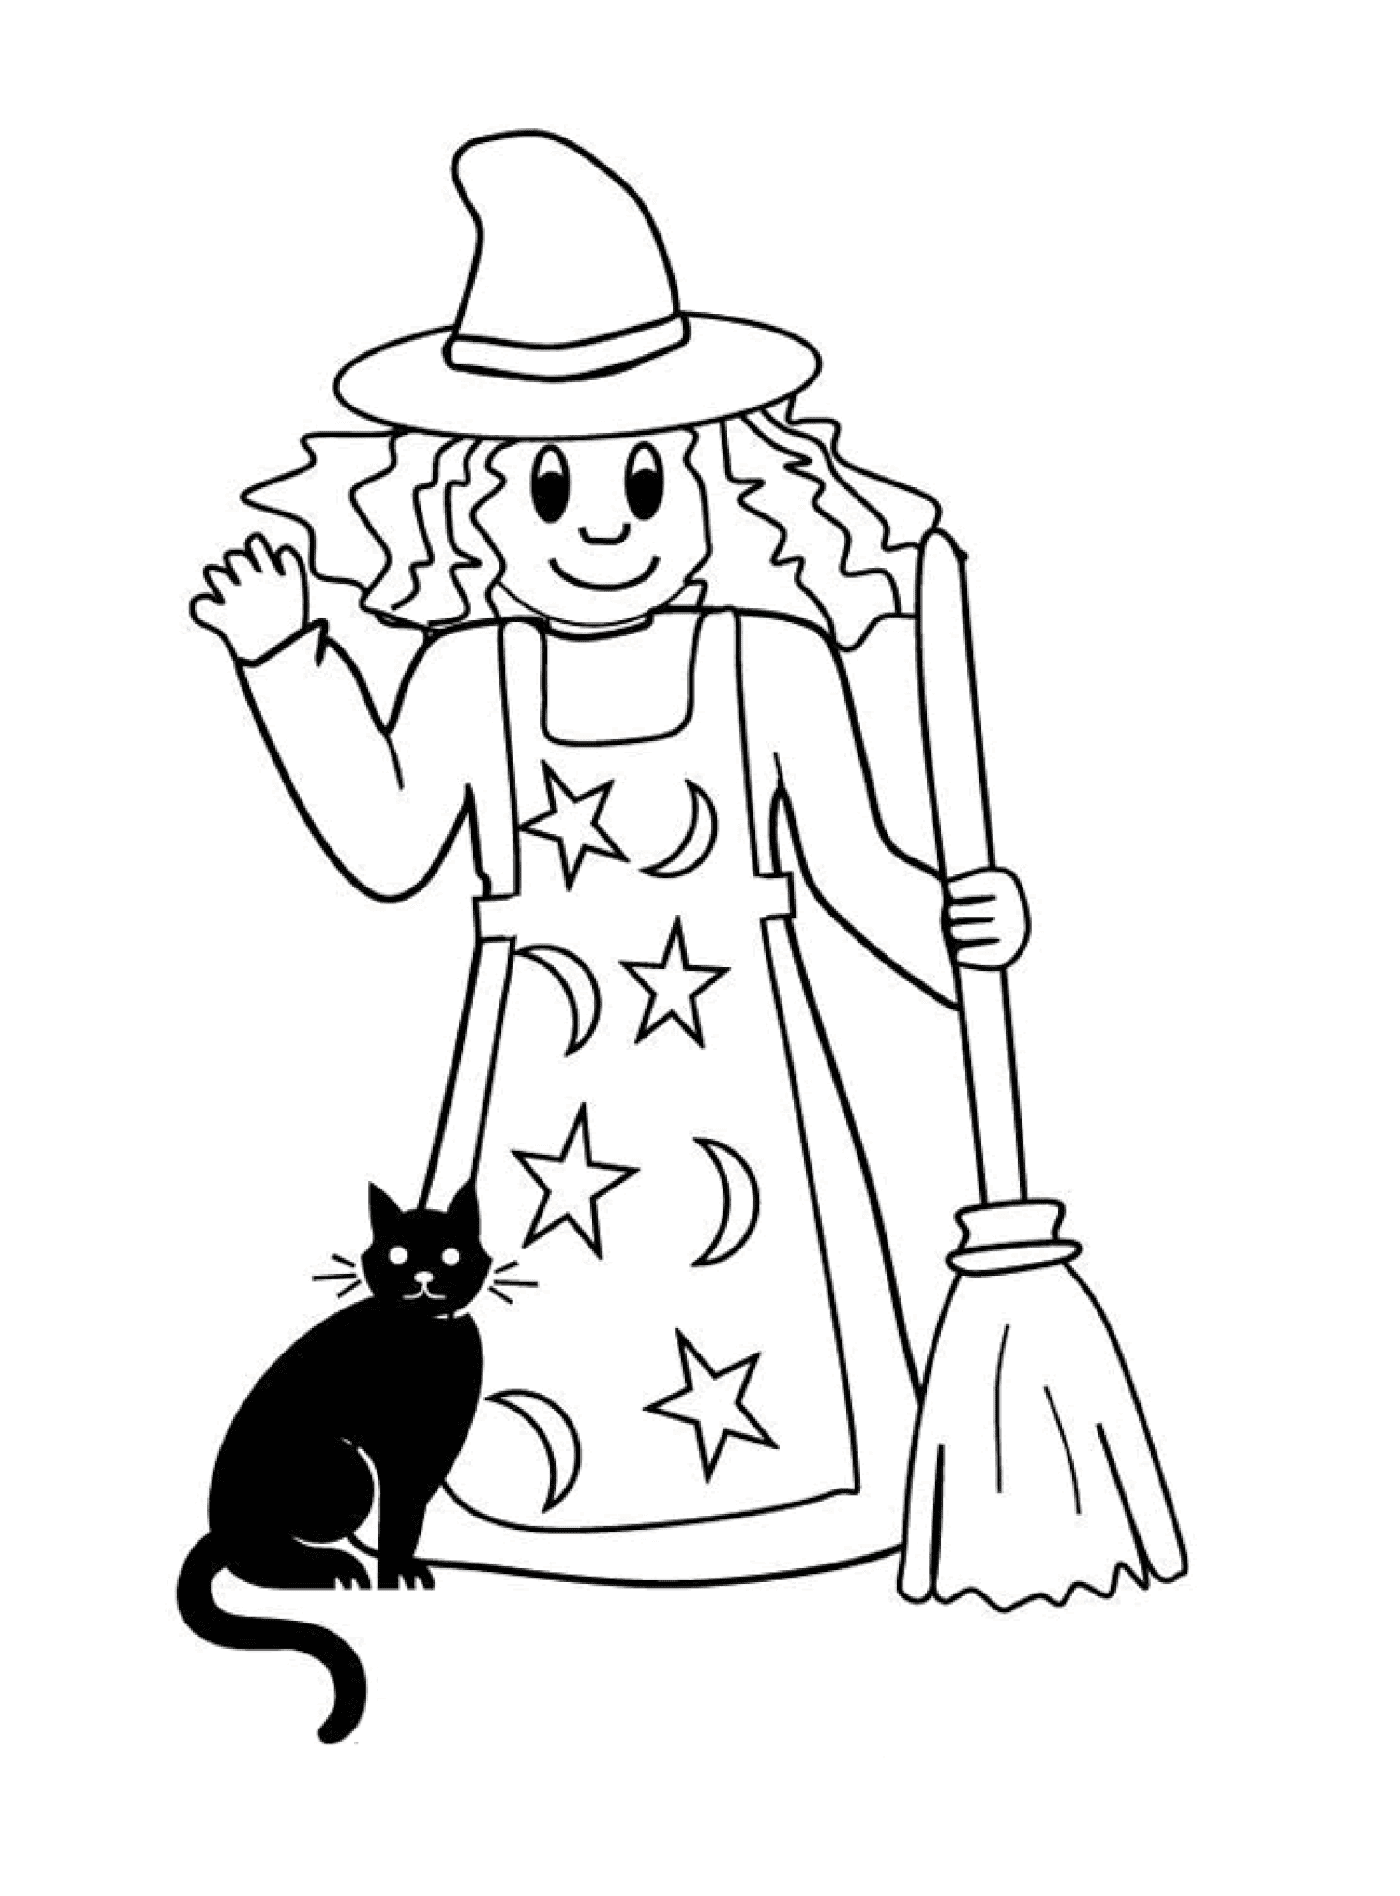  सरल चुड़ैल उसके काले बिल्ली के साथ 